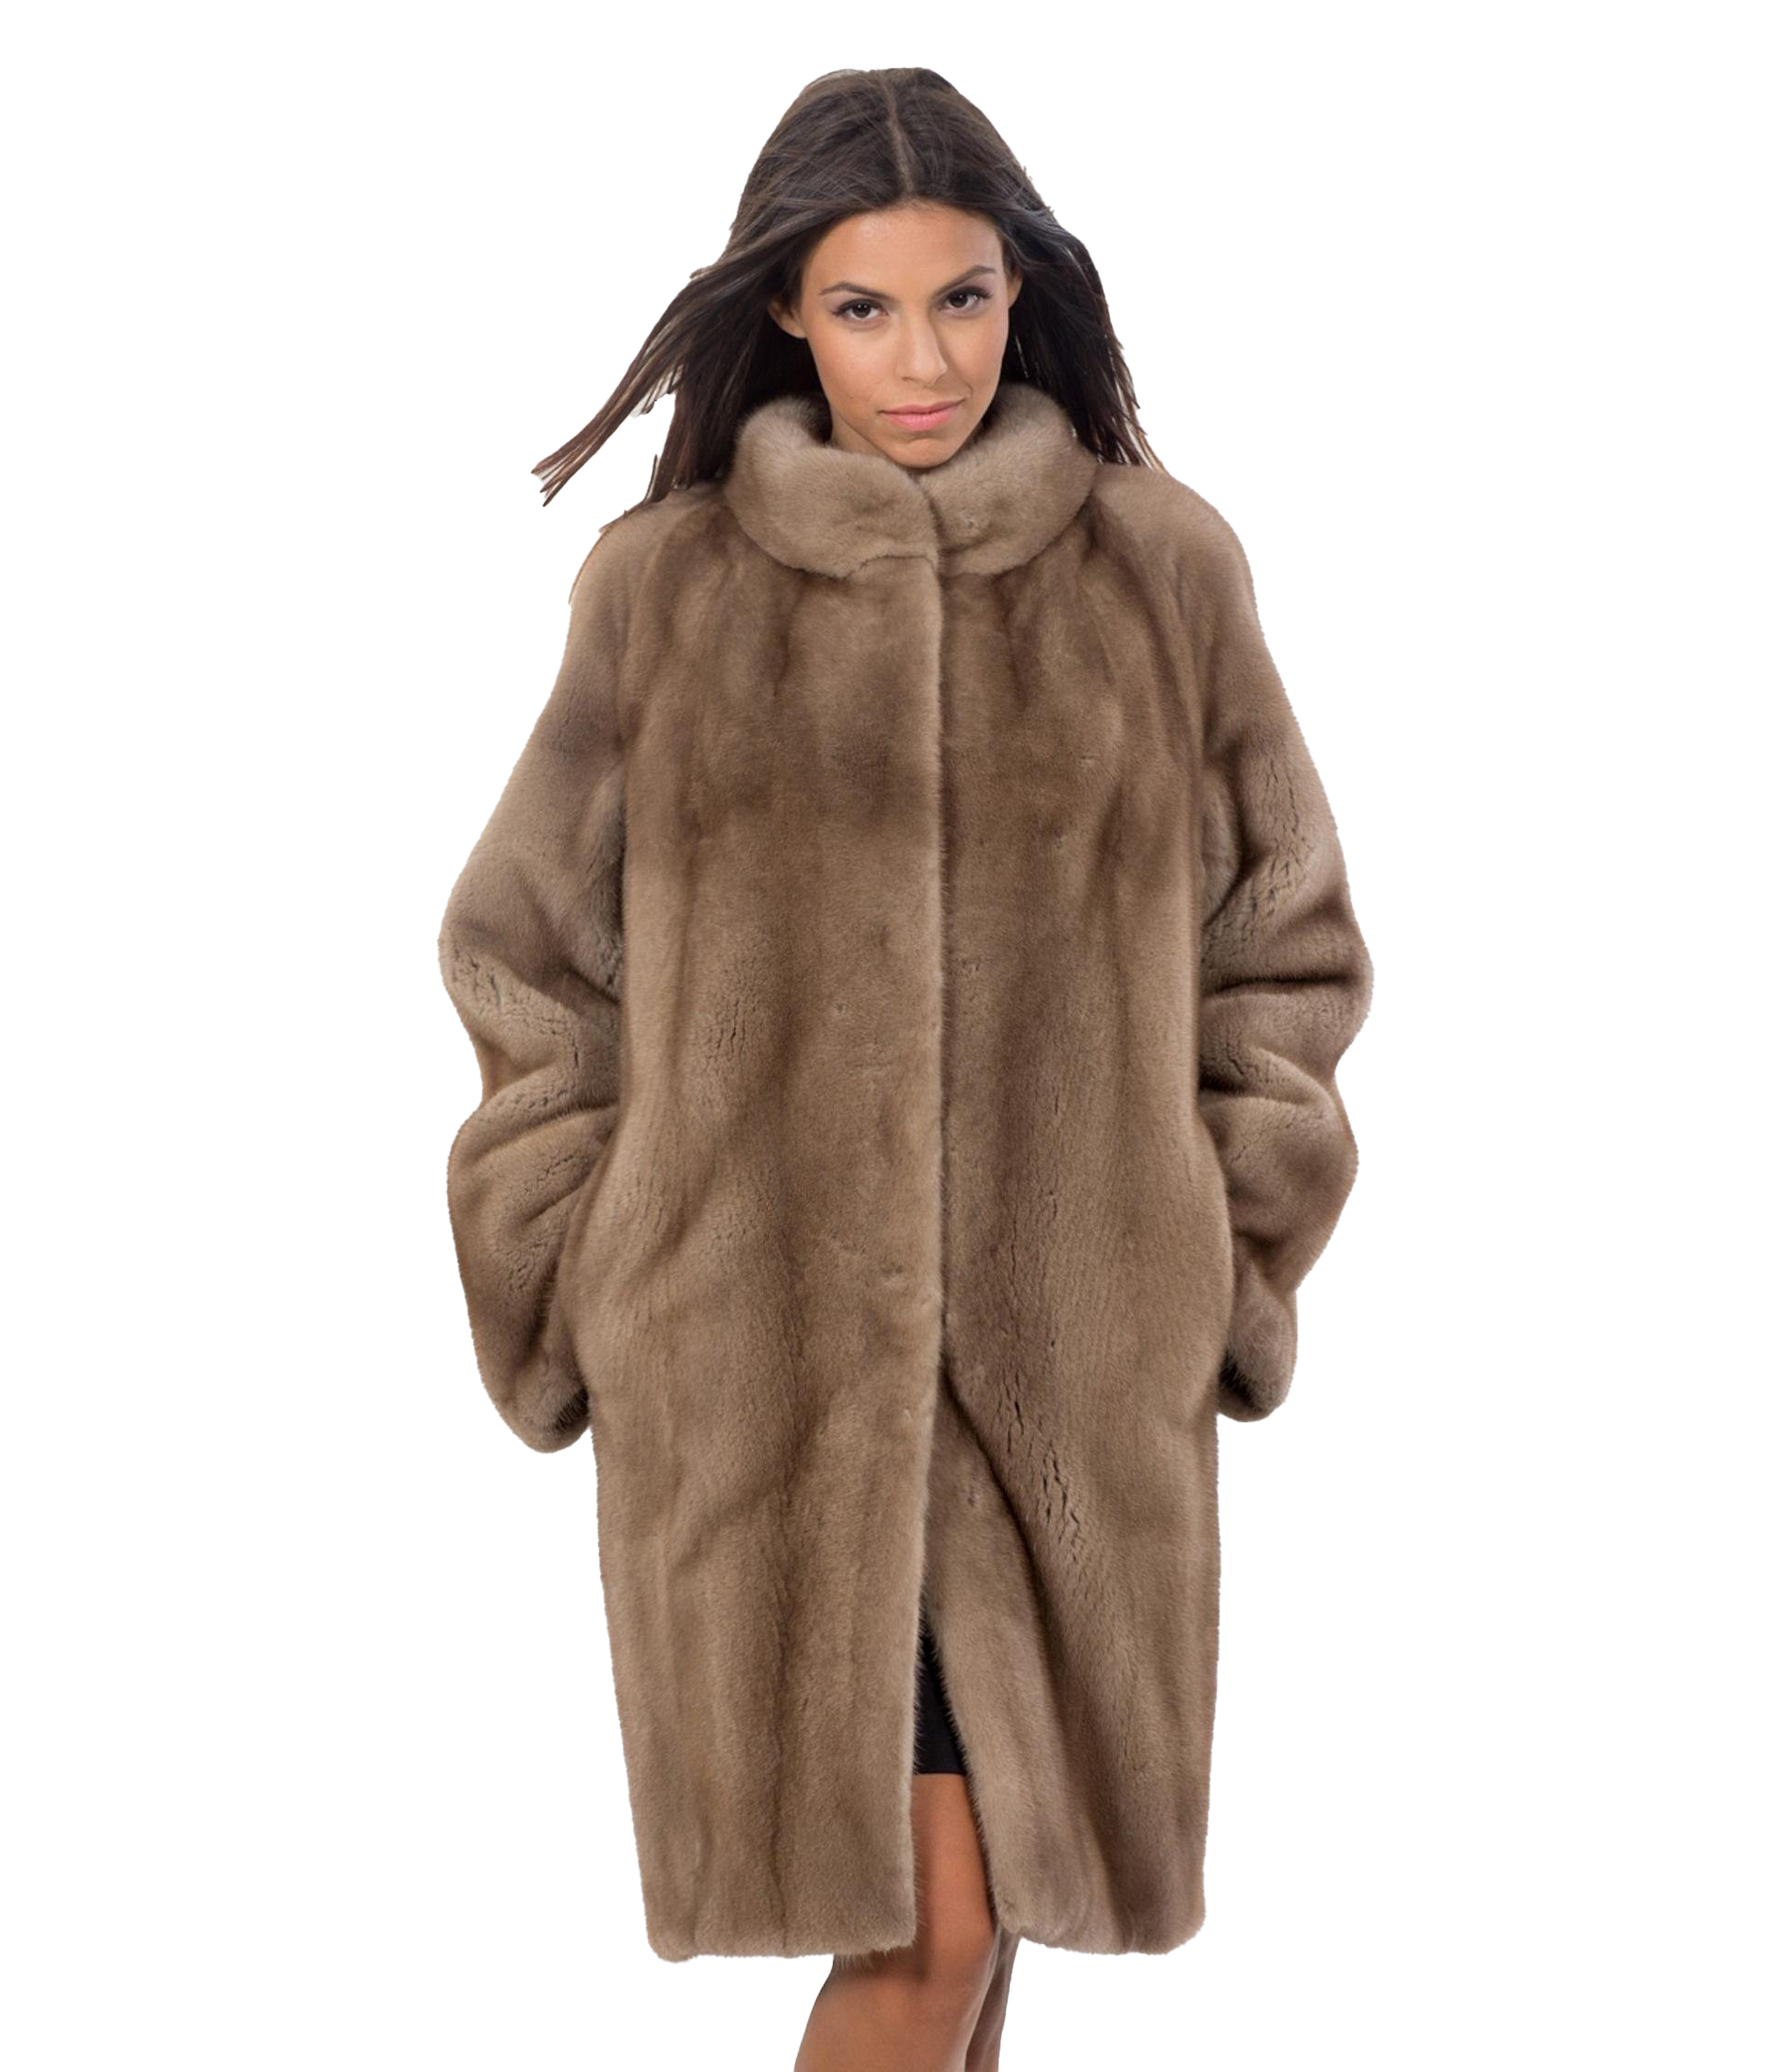 Fur Coat PNG Download Image